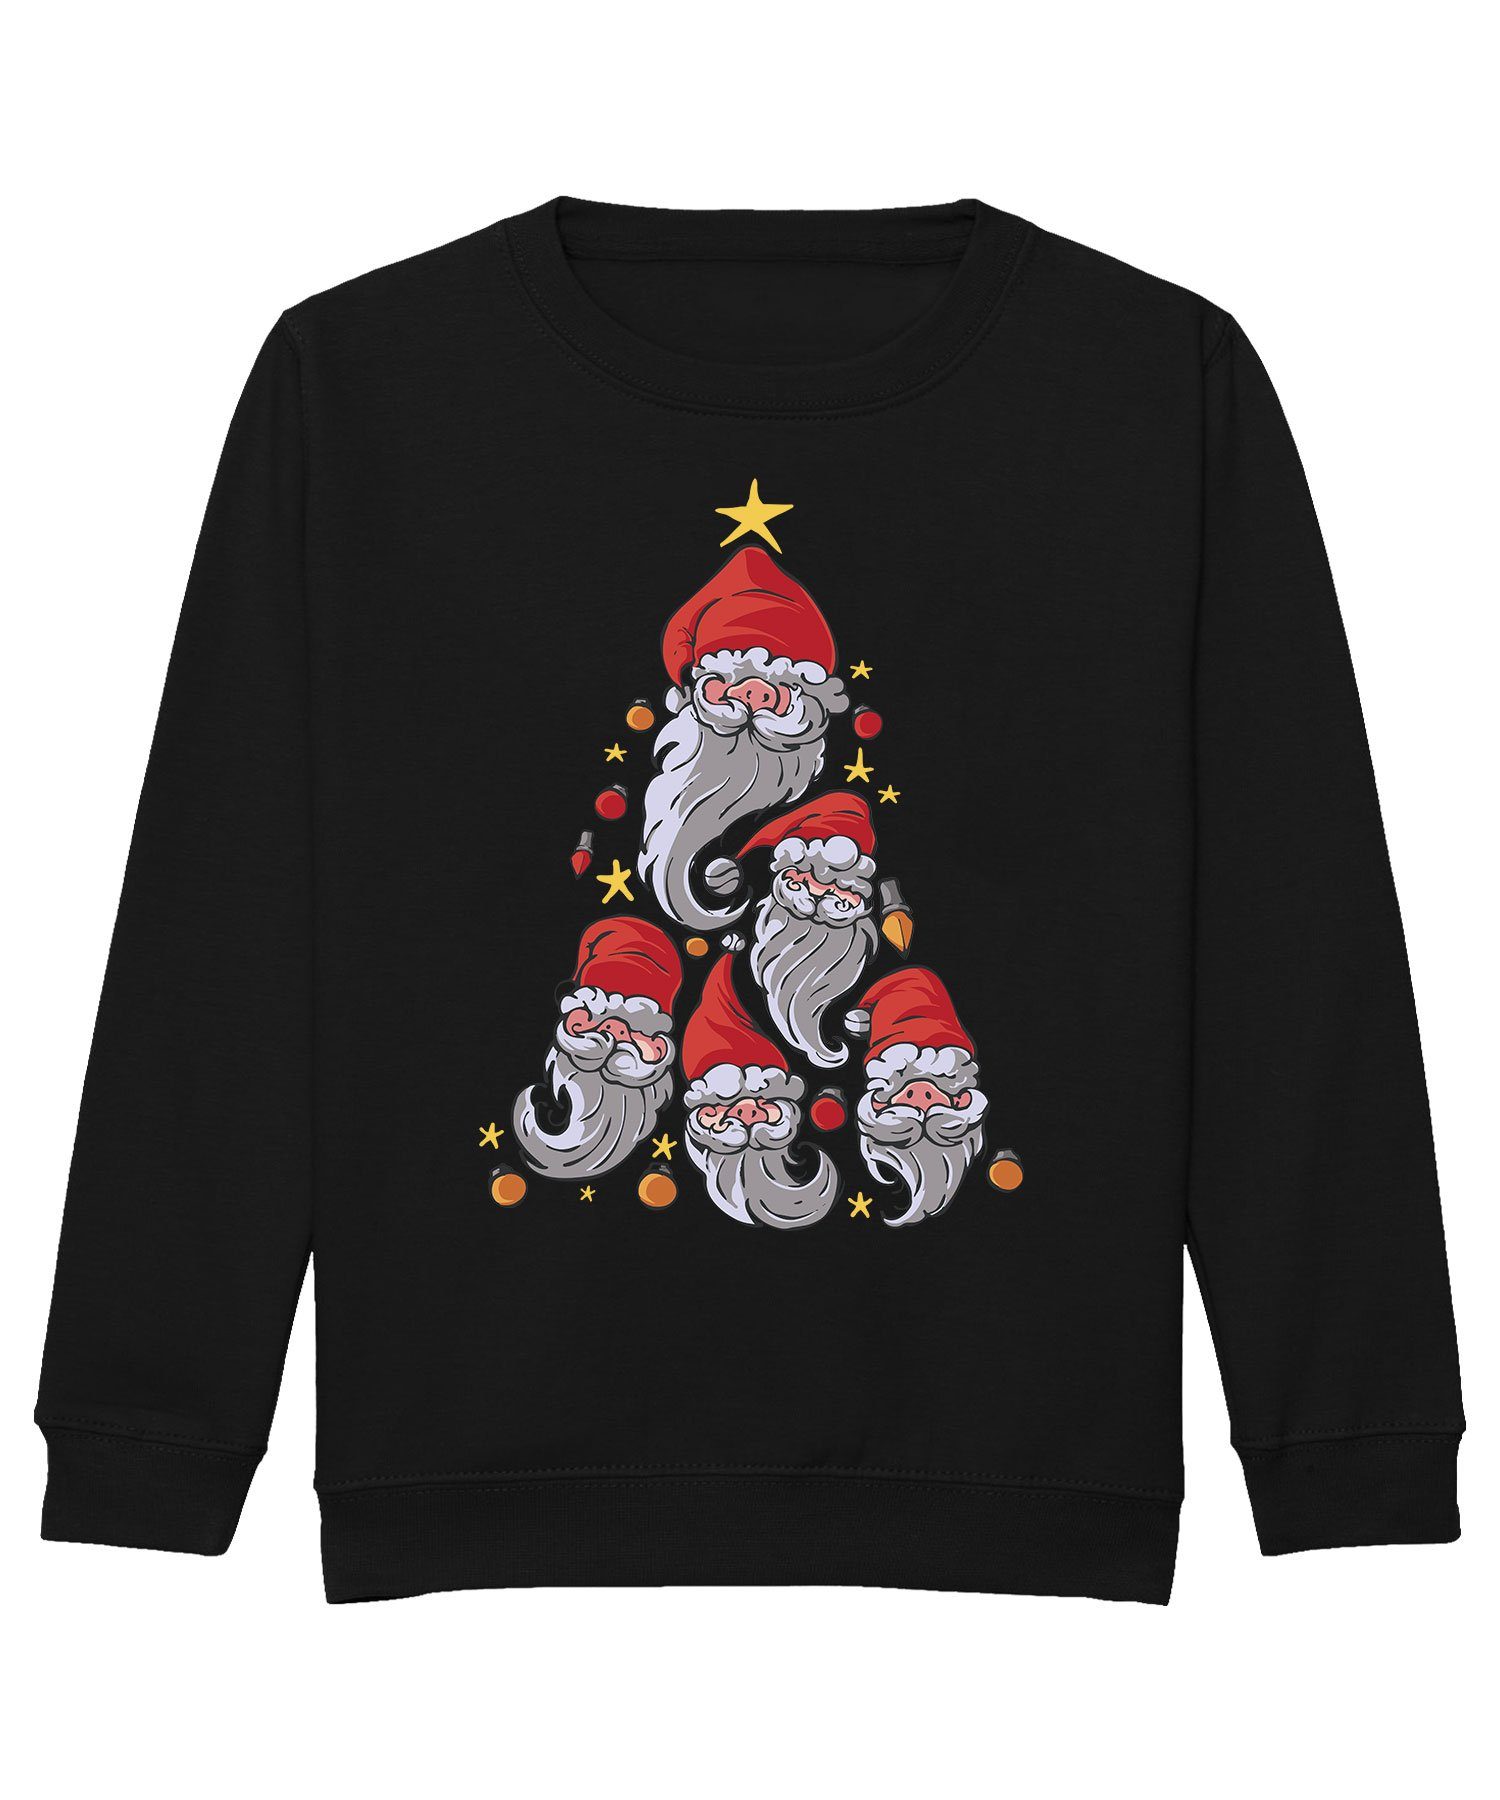 (1-tlg) Quattro Sweatshirt Kinder Sweatshirt Gnome Weihnachtsbaum Zwerge Pullover Formatee